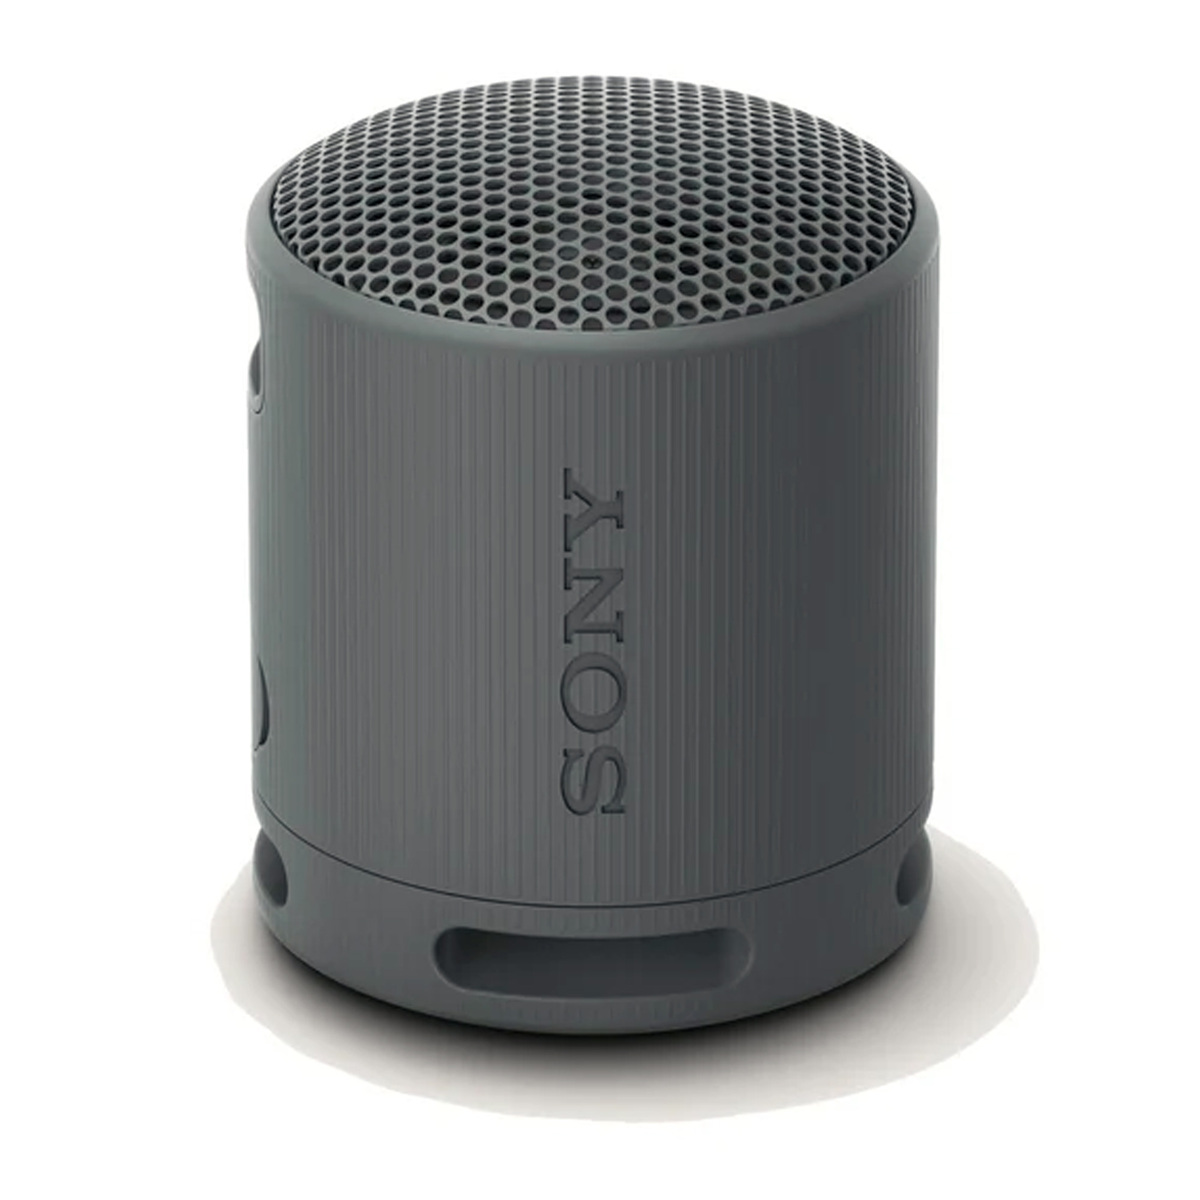 Sony SRS-XB100 Portable Wireless Speaker Black